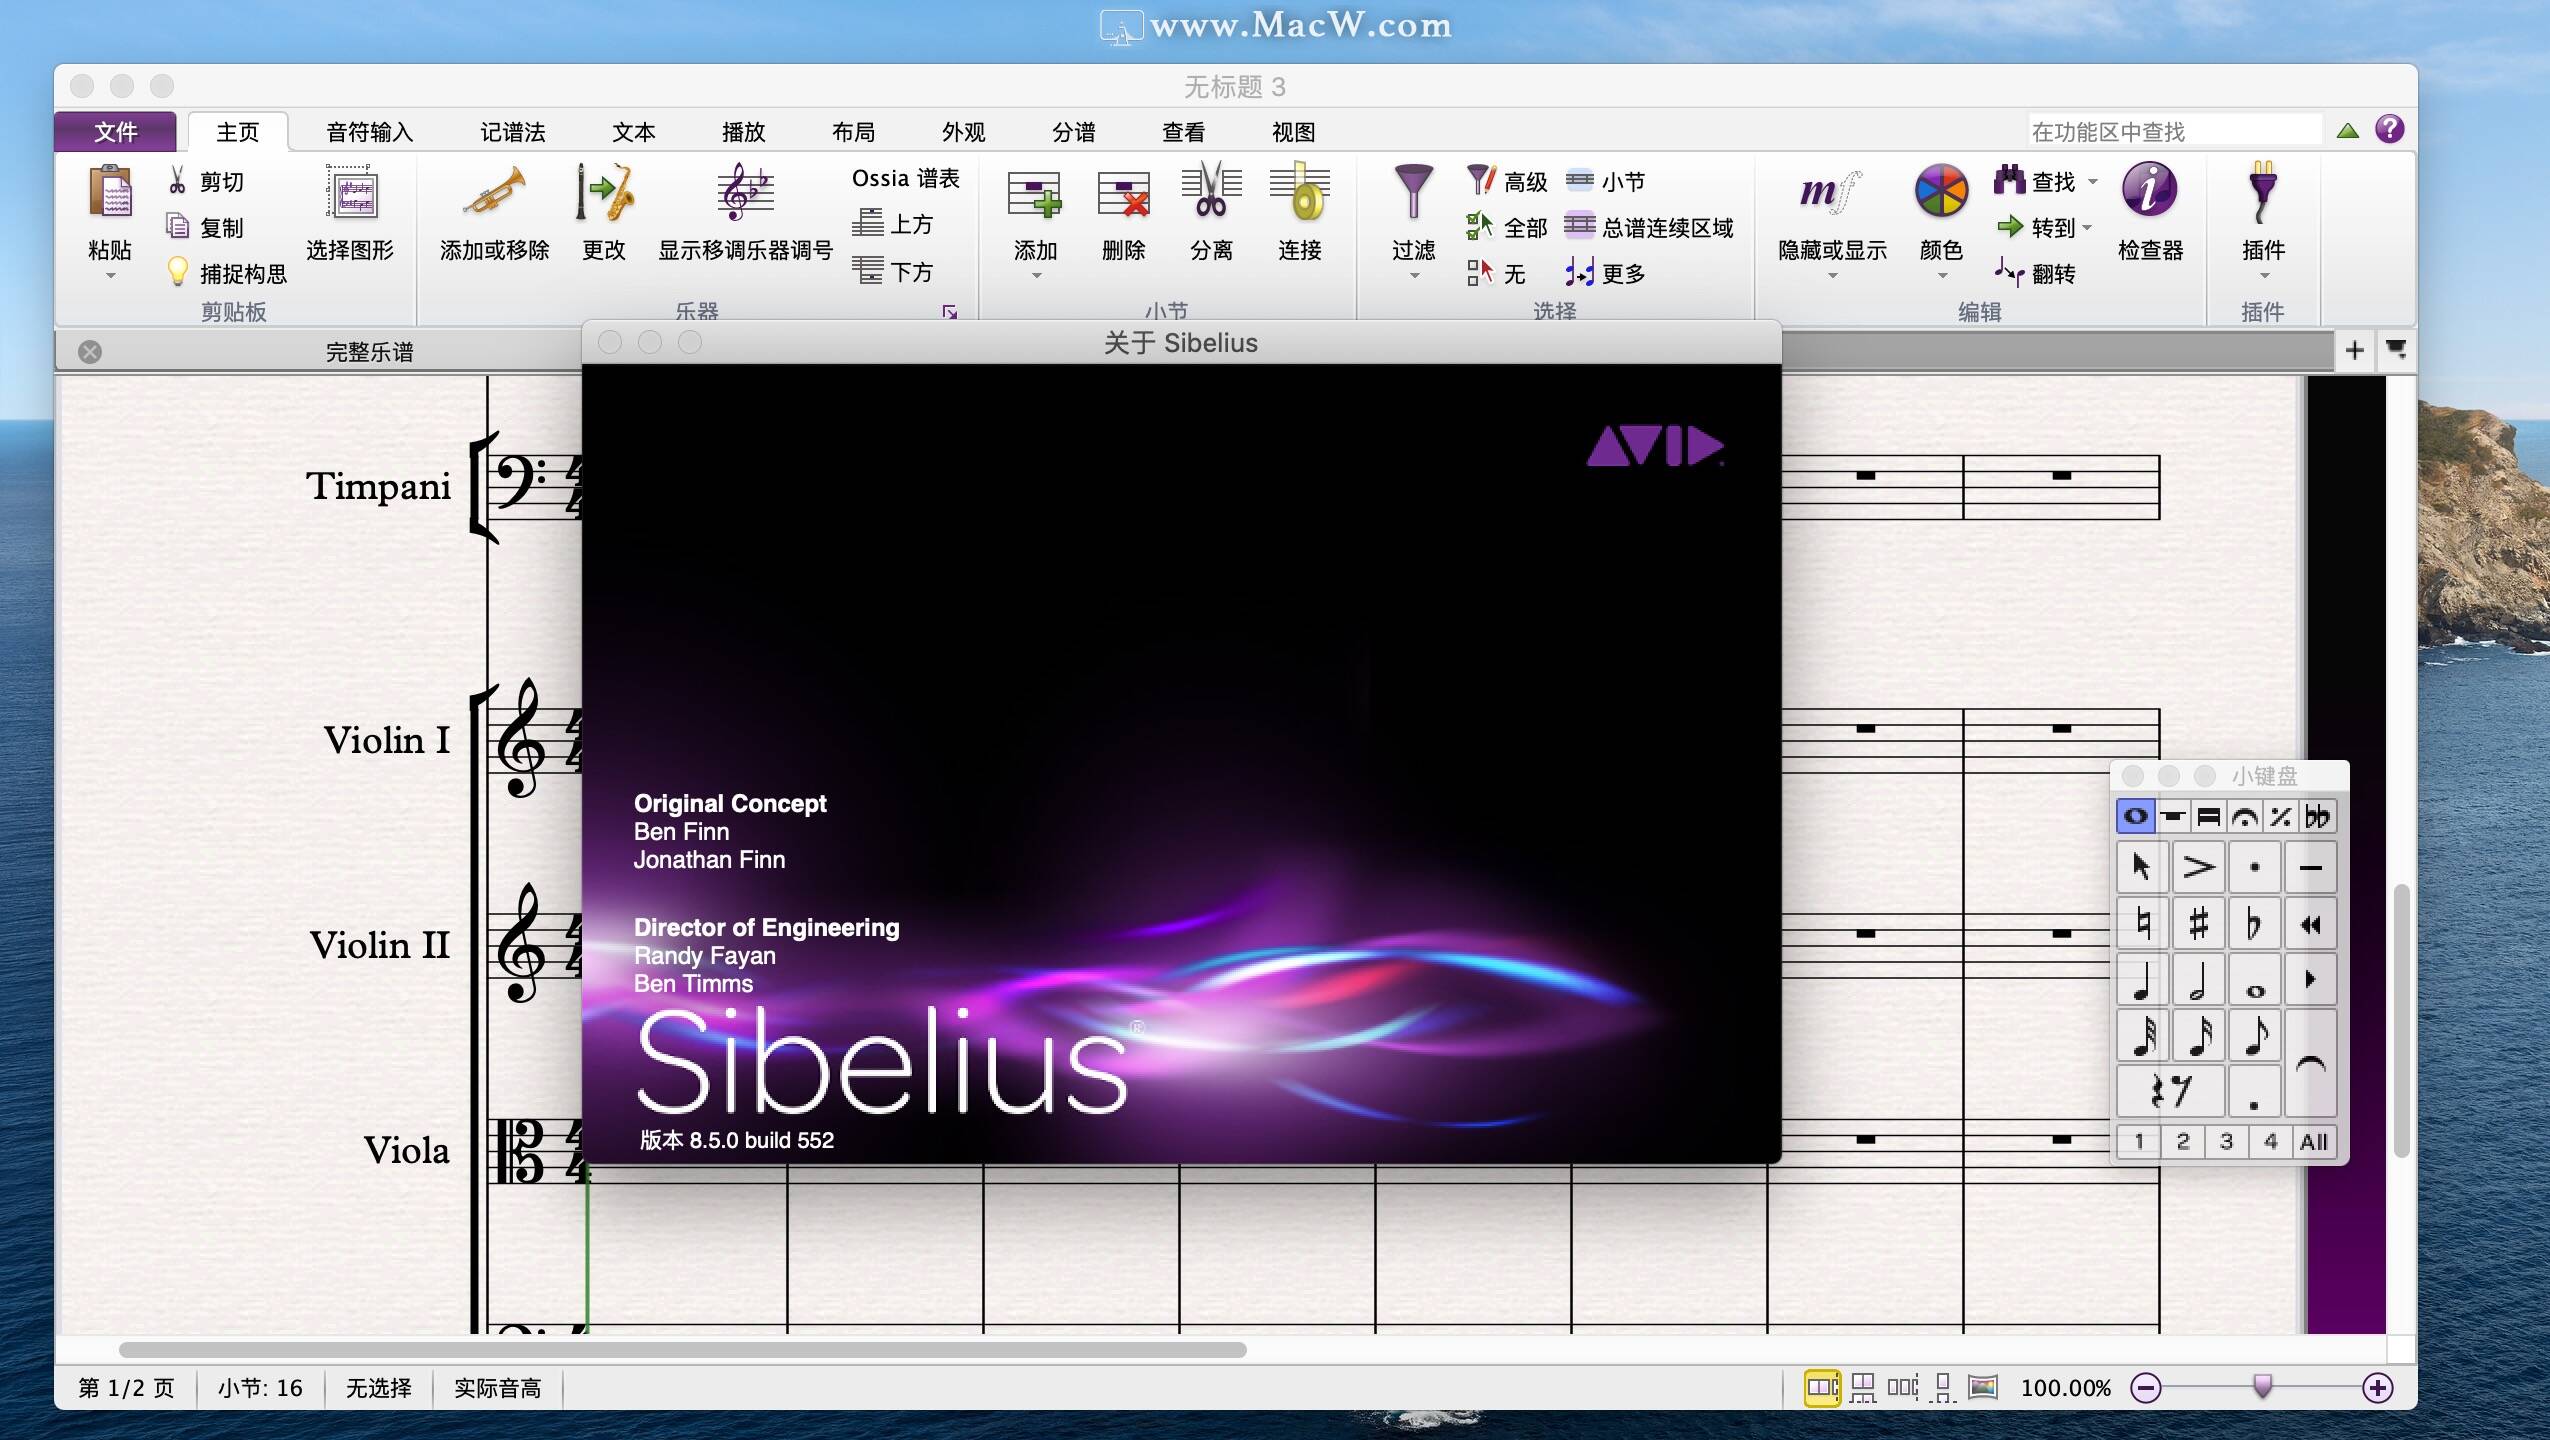 sibelius 8.6 mac torrent